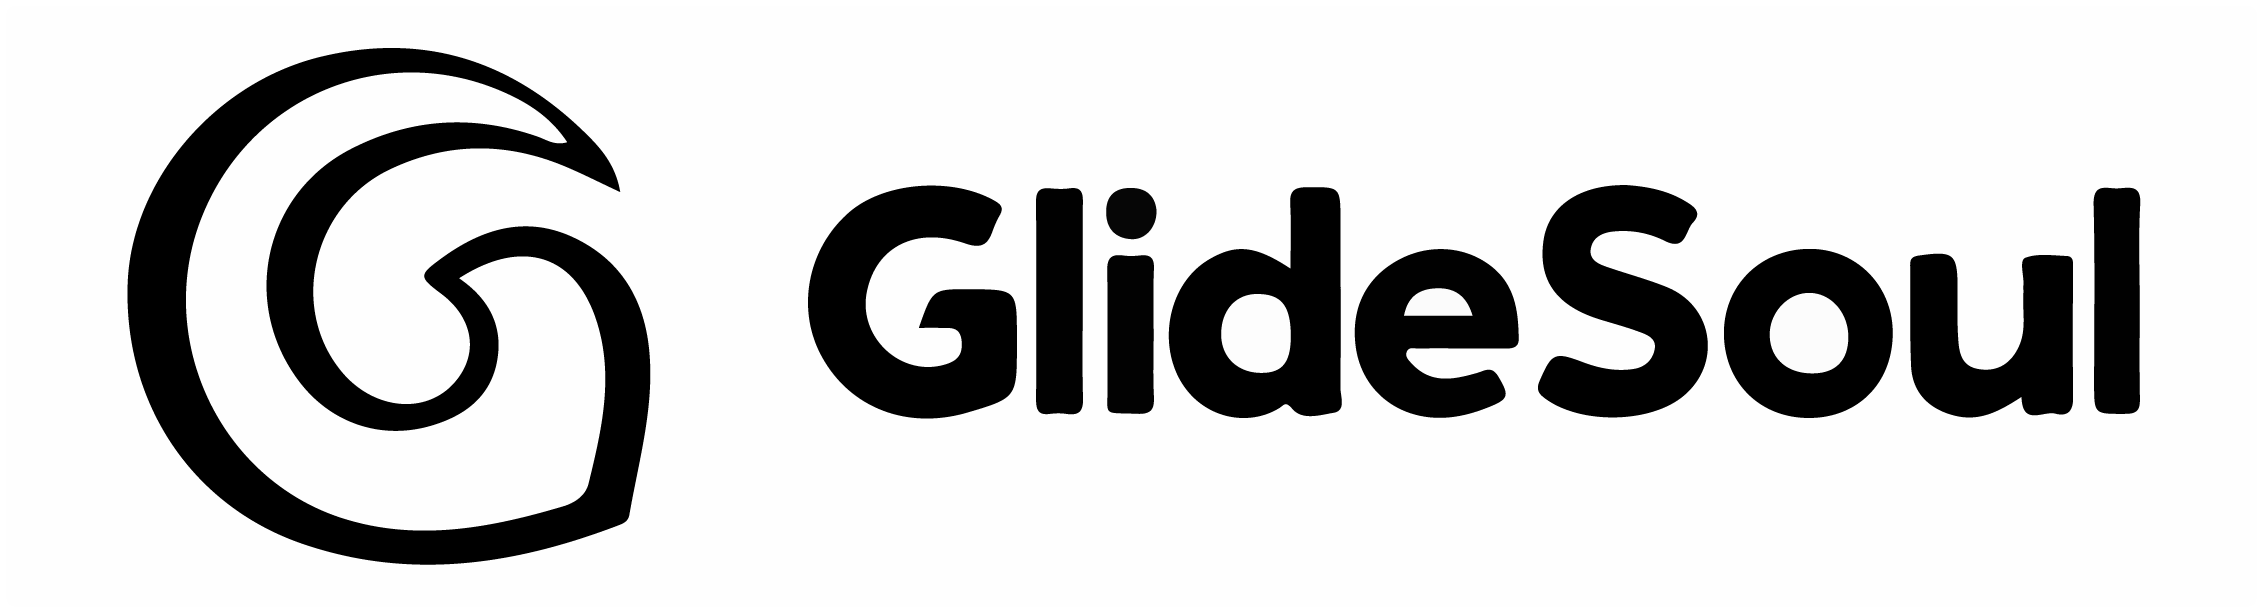 GlideSoul